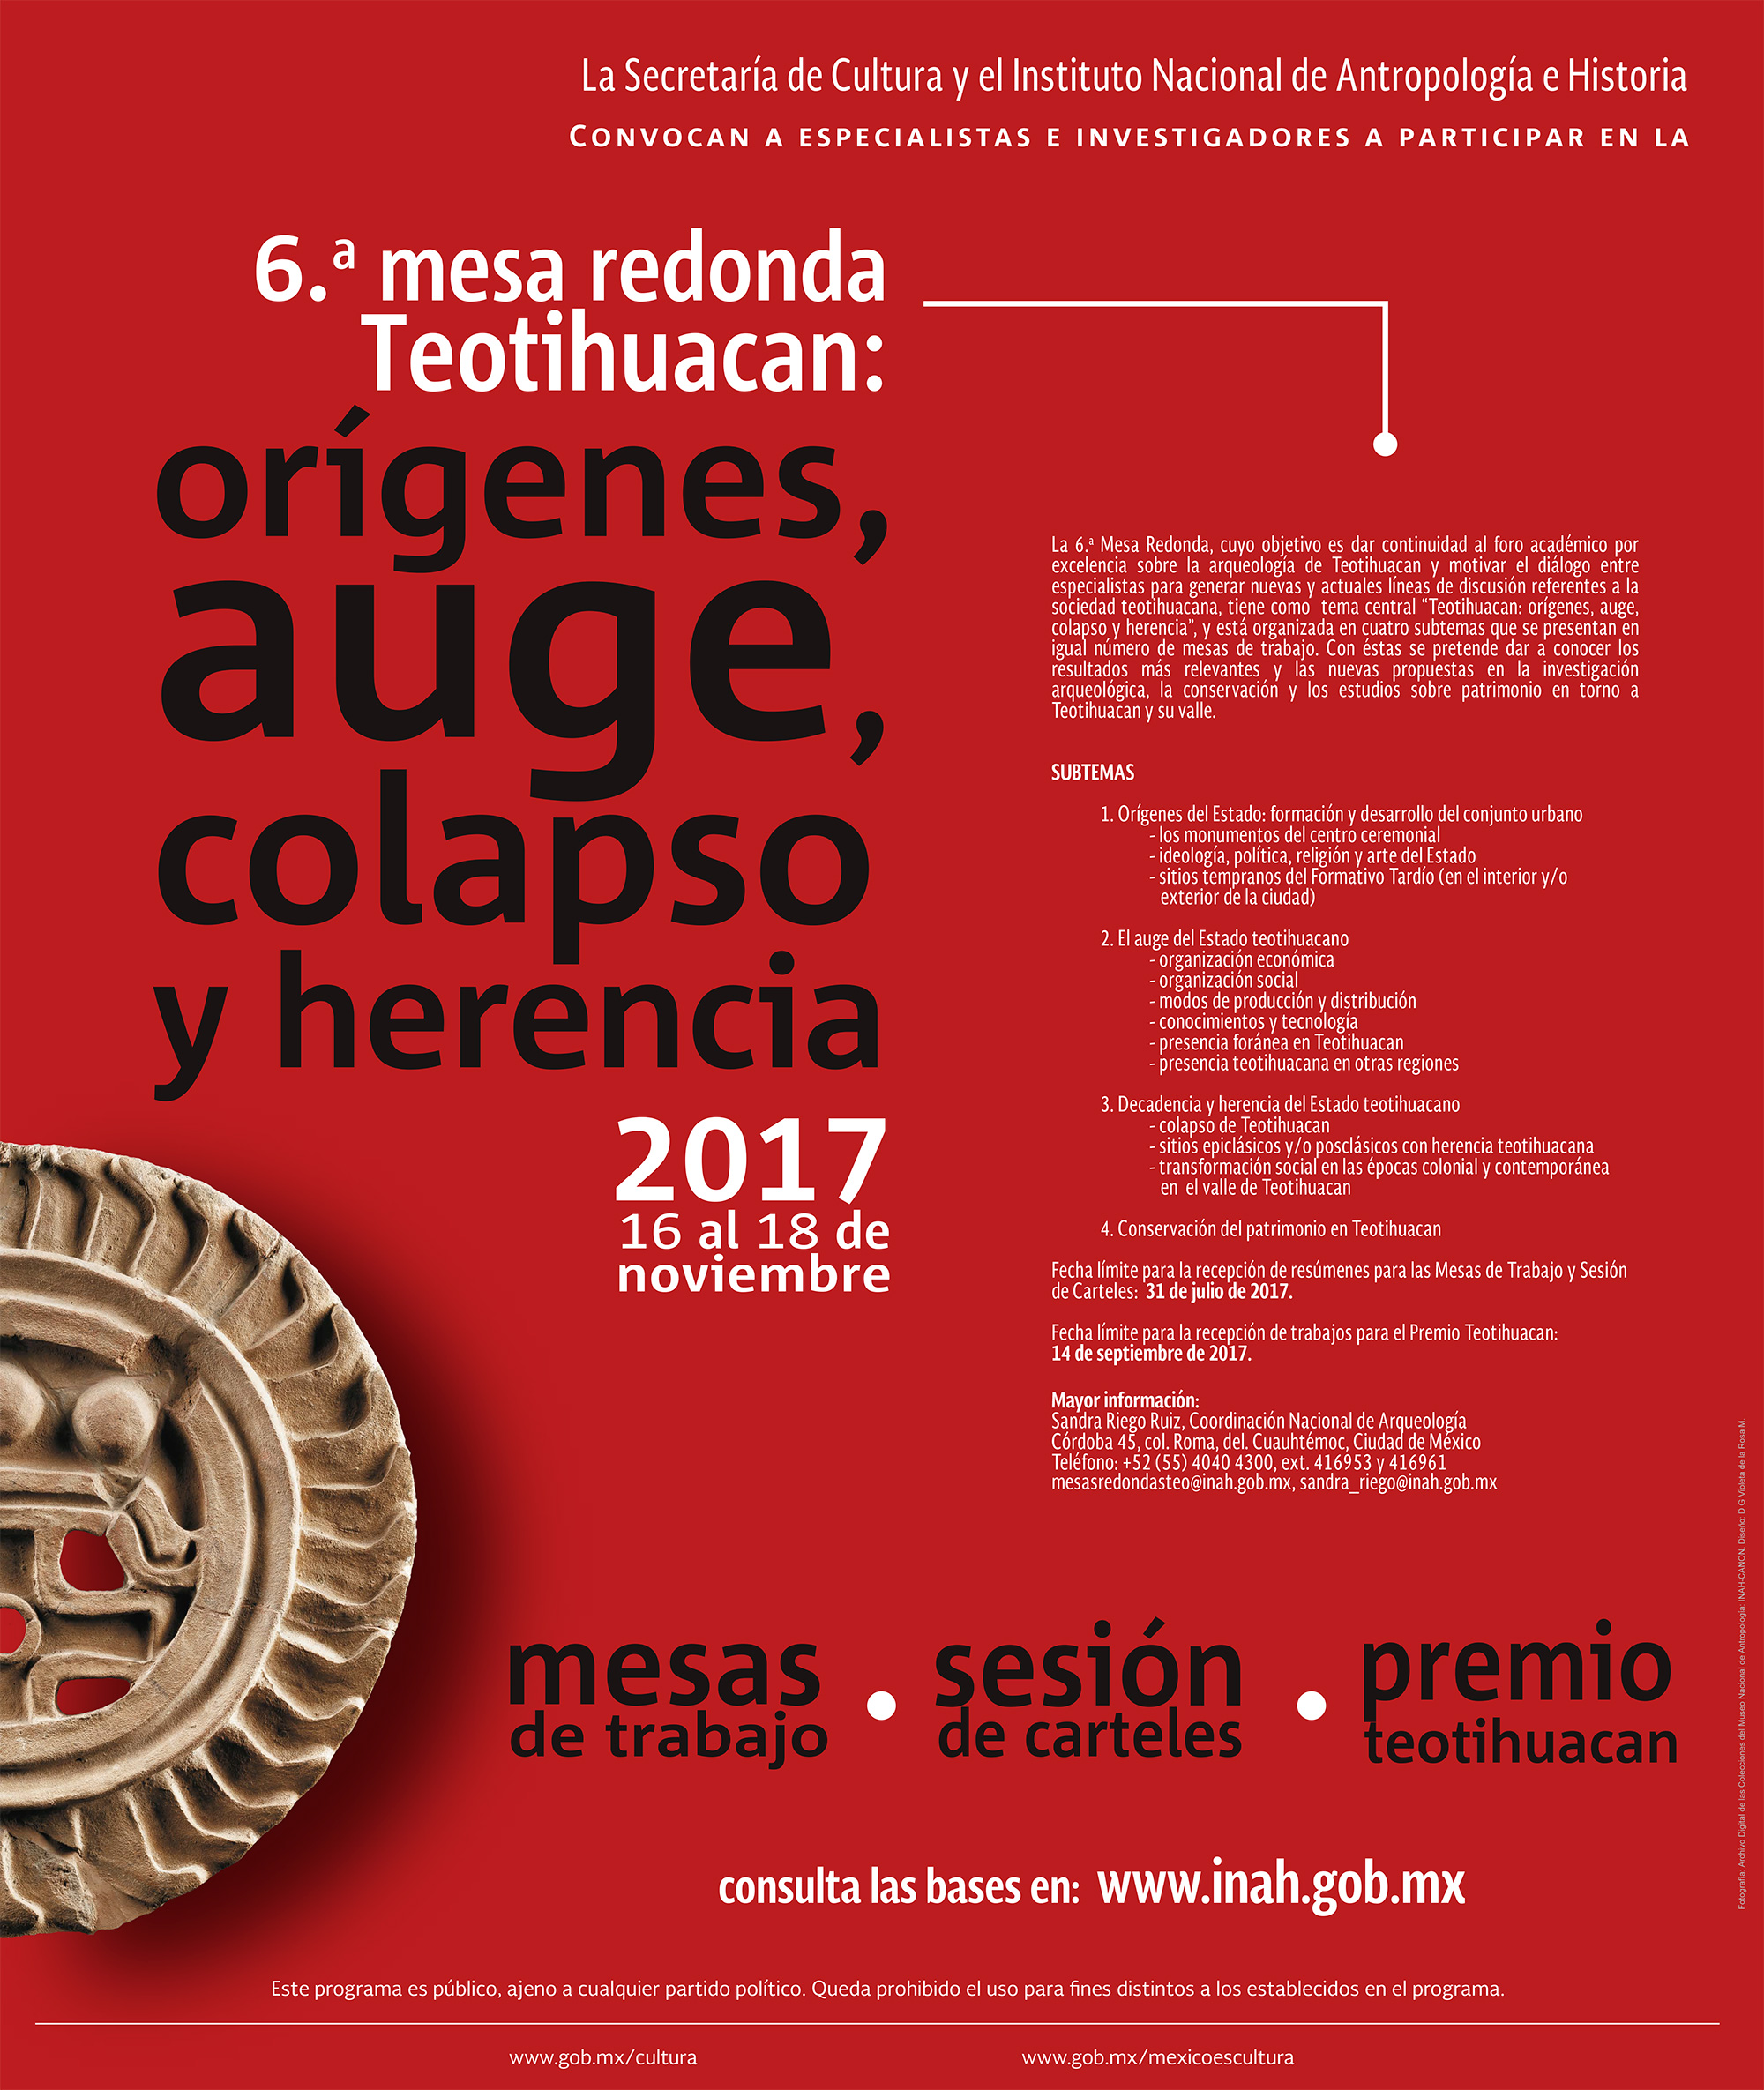 CONVOCATORIA: Orígenes, auge, colapso y herencia de Teotihuacan. 6ta. Mesa Redonda